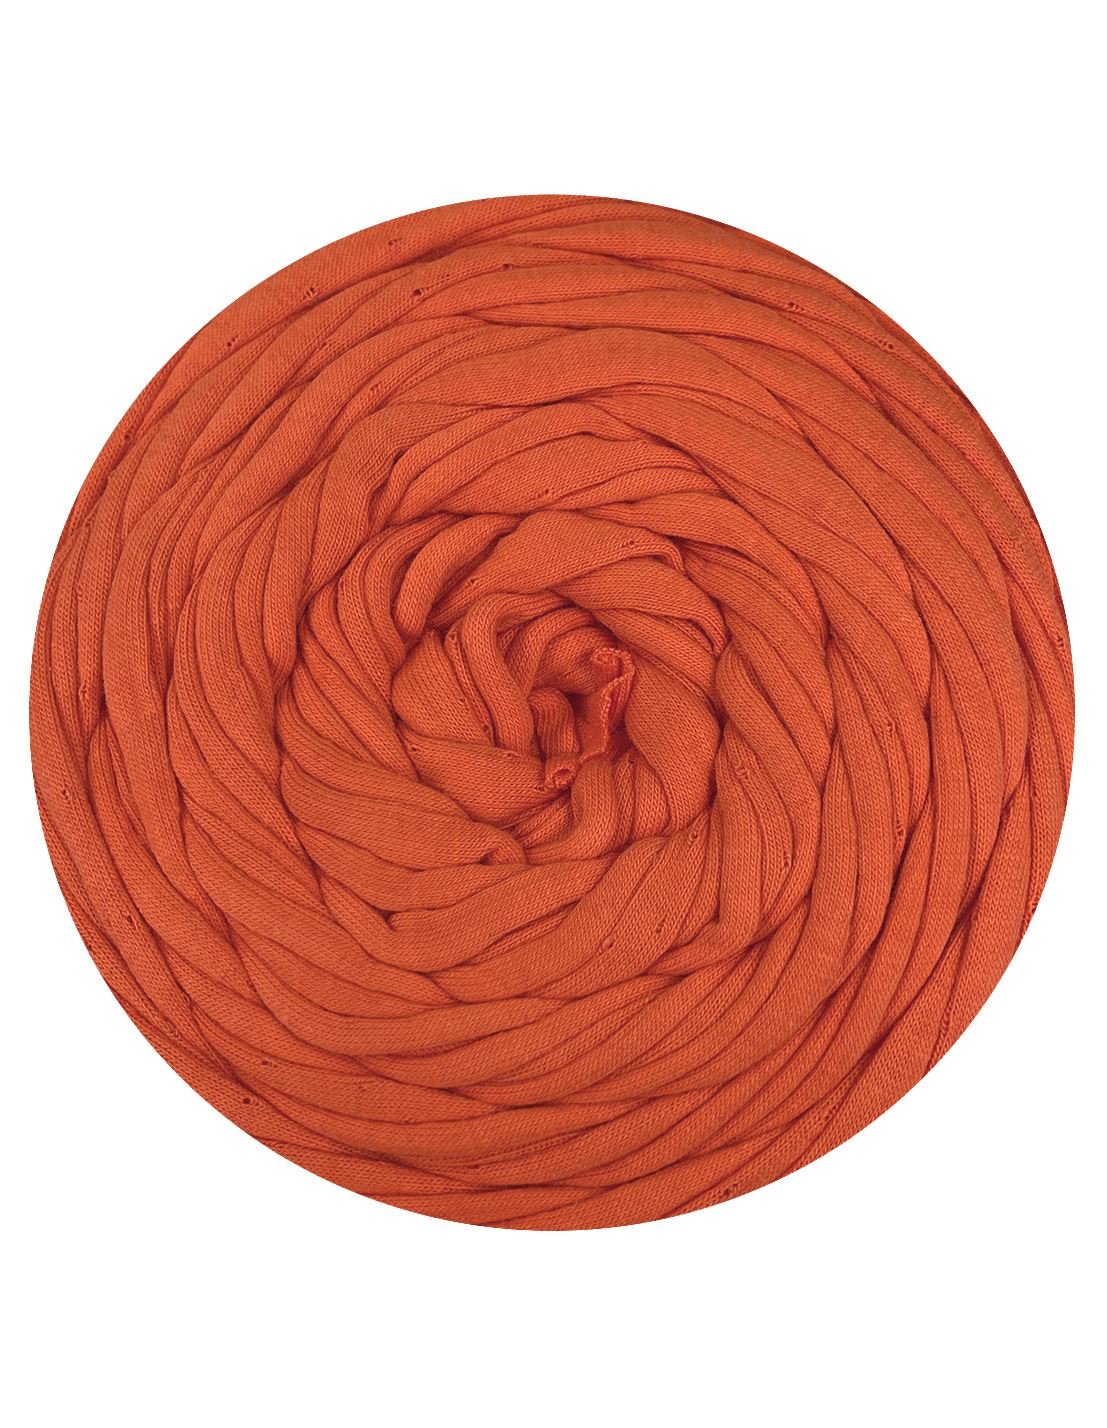 Deep orange t-shirt yarn by Hoooked Zpagetti (100-120m)